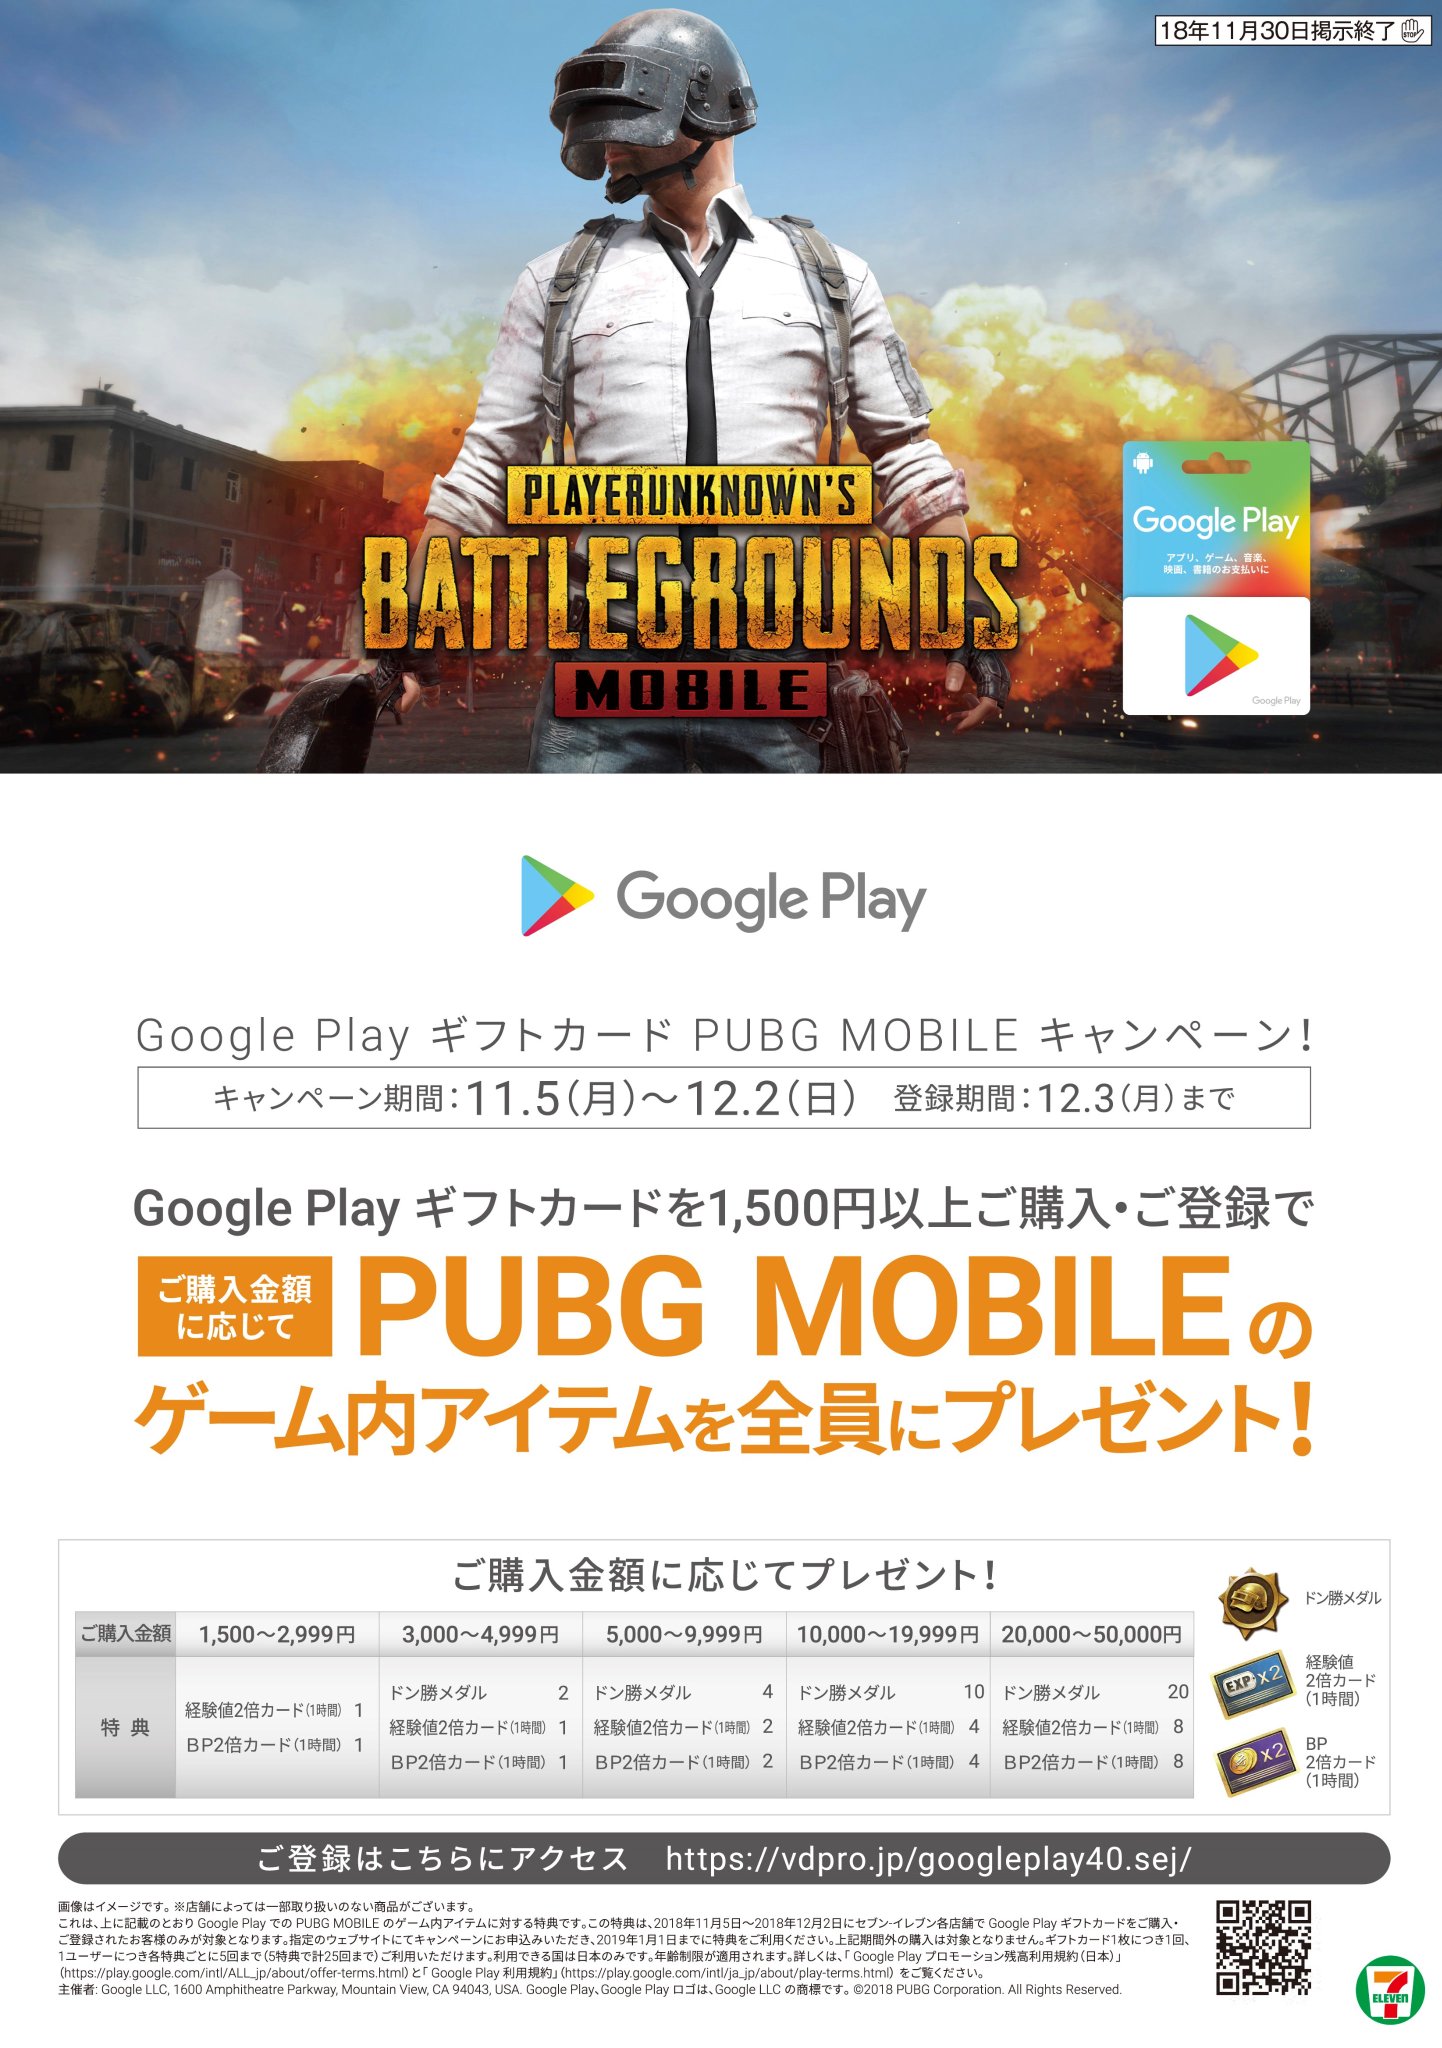 Pubg Mobile 日本公式 Twitterissa お知らせ Google Play ギフトカード Pubg Mobileキャンペーン 開催中 Google Play ギフトカードを1 500円以上ご購入 ご登録して頂くと購入金額に応じてゲーム内アイテムがもらえます 詳細はこちら